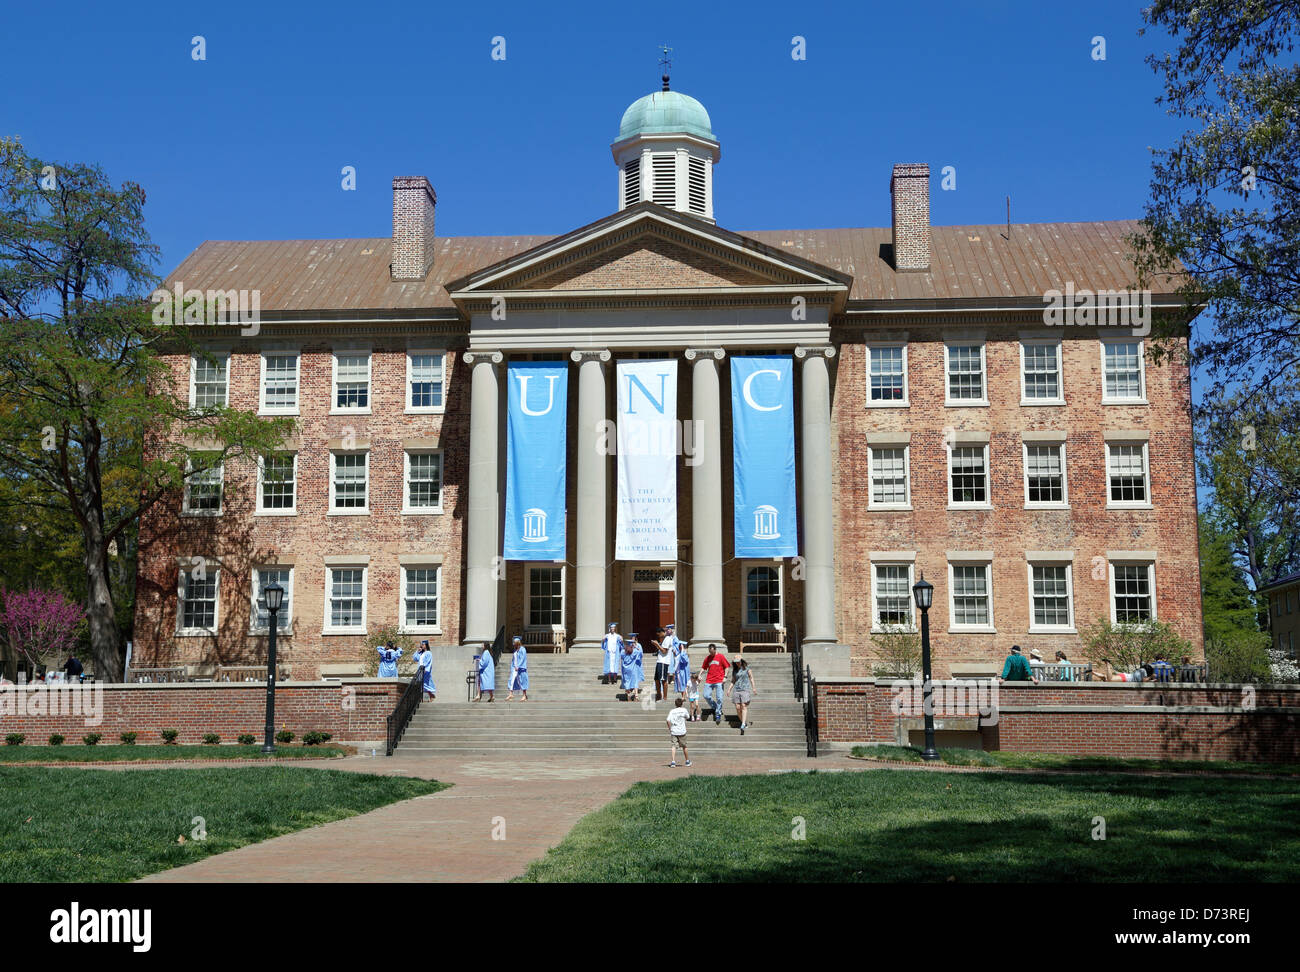 University of North Carolina, Chapel Hill, UNC. Les élèves de toges dans sur les marches de l'édifice du Sud. Banque D'Images